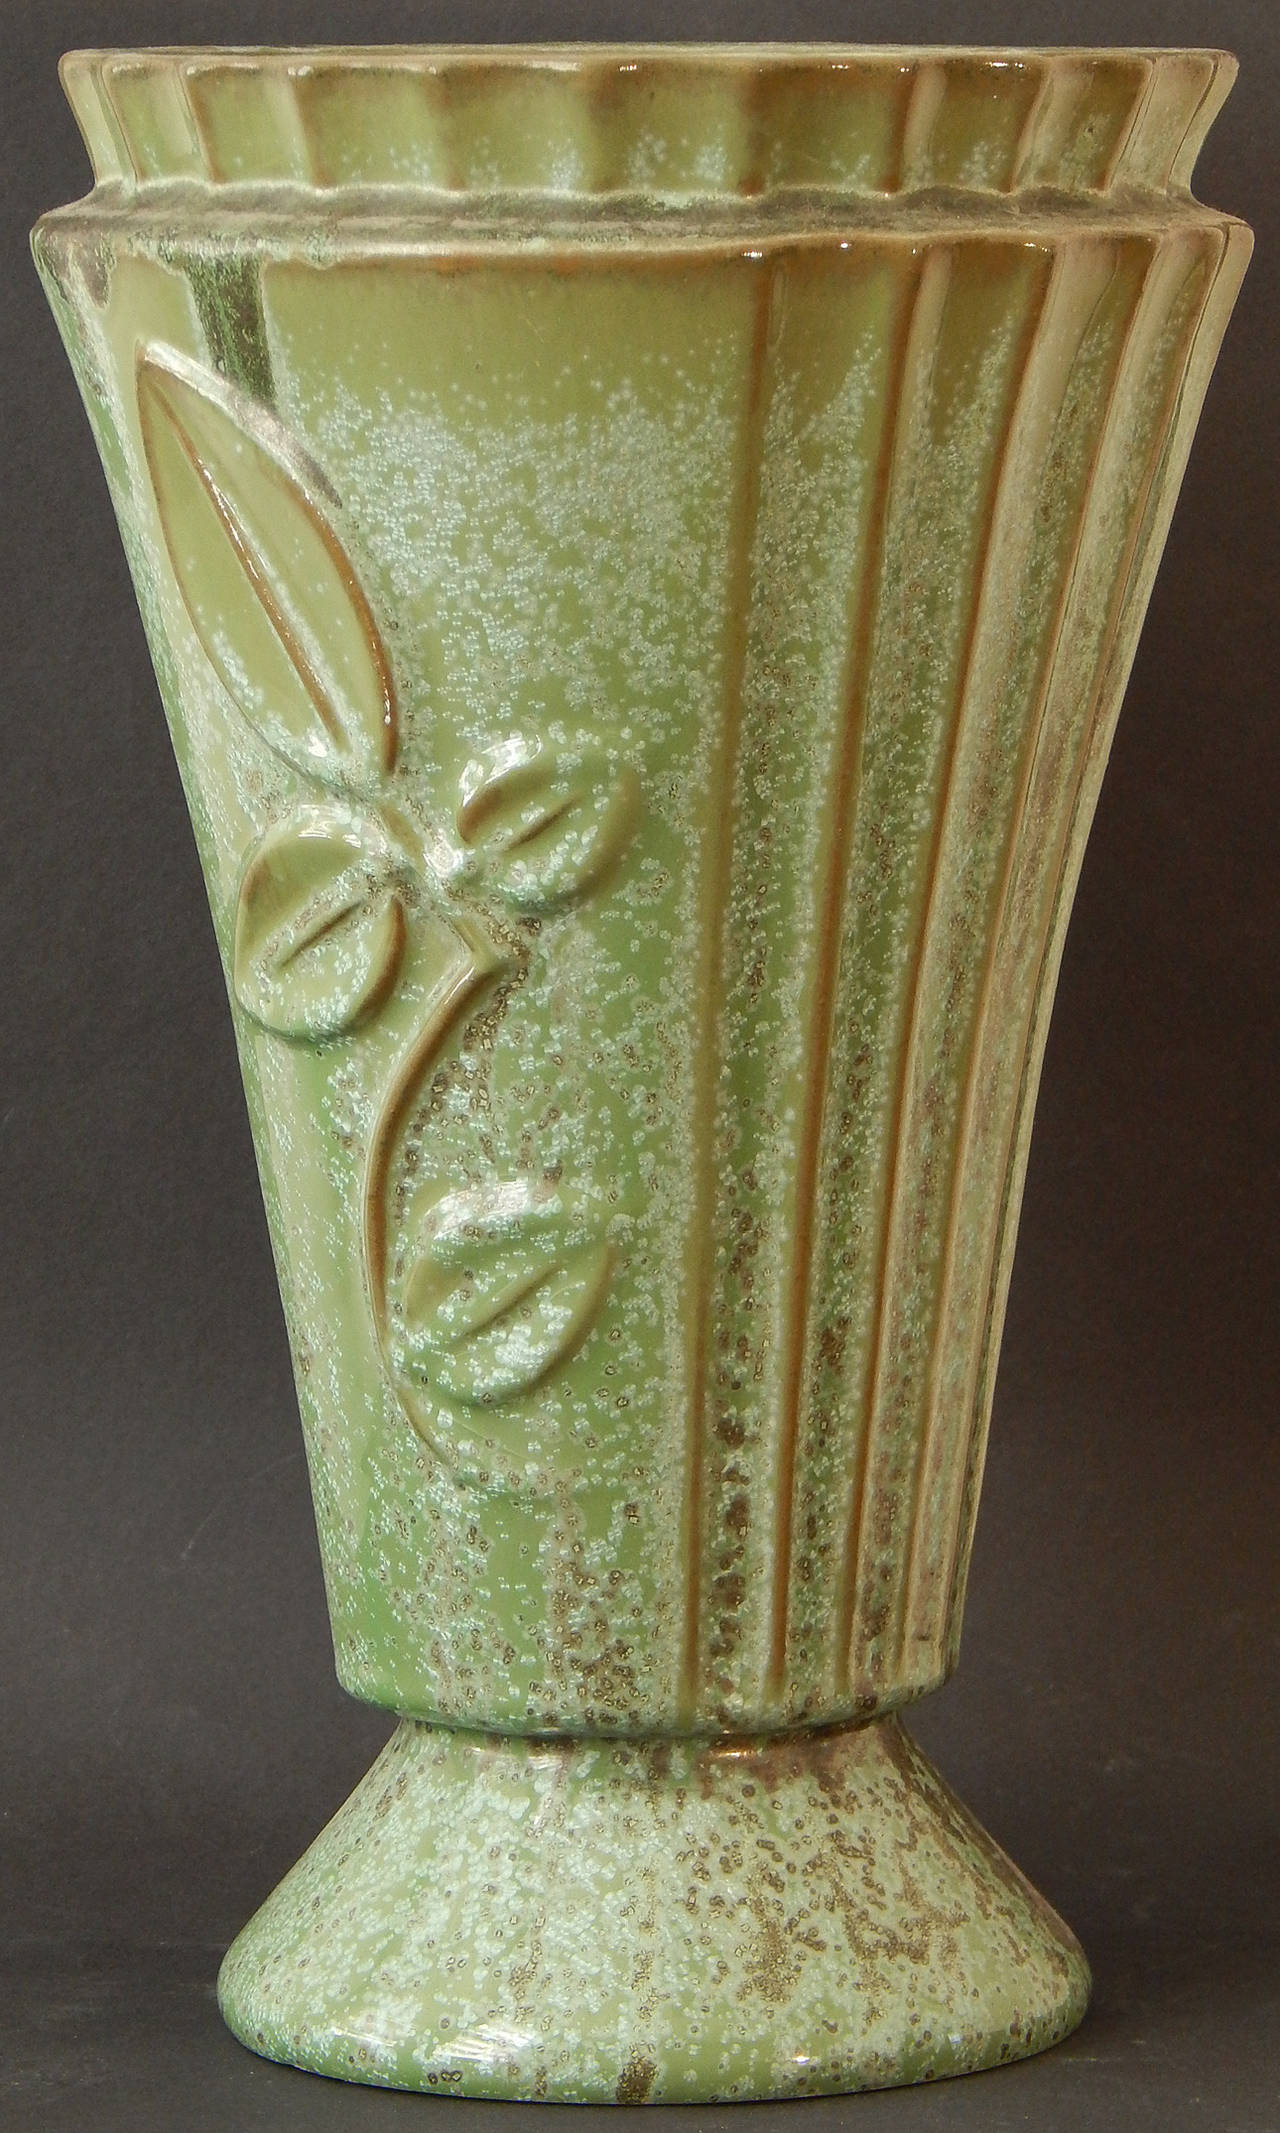 Une forme très rare, mais émaillée avec la magnifique glaçure tachetée et striée qui a fait la renommée de Fulper Pottery, ce vase cannelé et évasé est décoré de formes de feuilles et de branches en bas-relief profond qui sont stylisées dans le